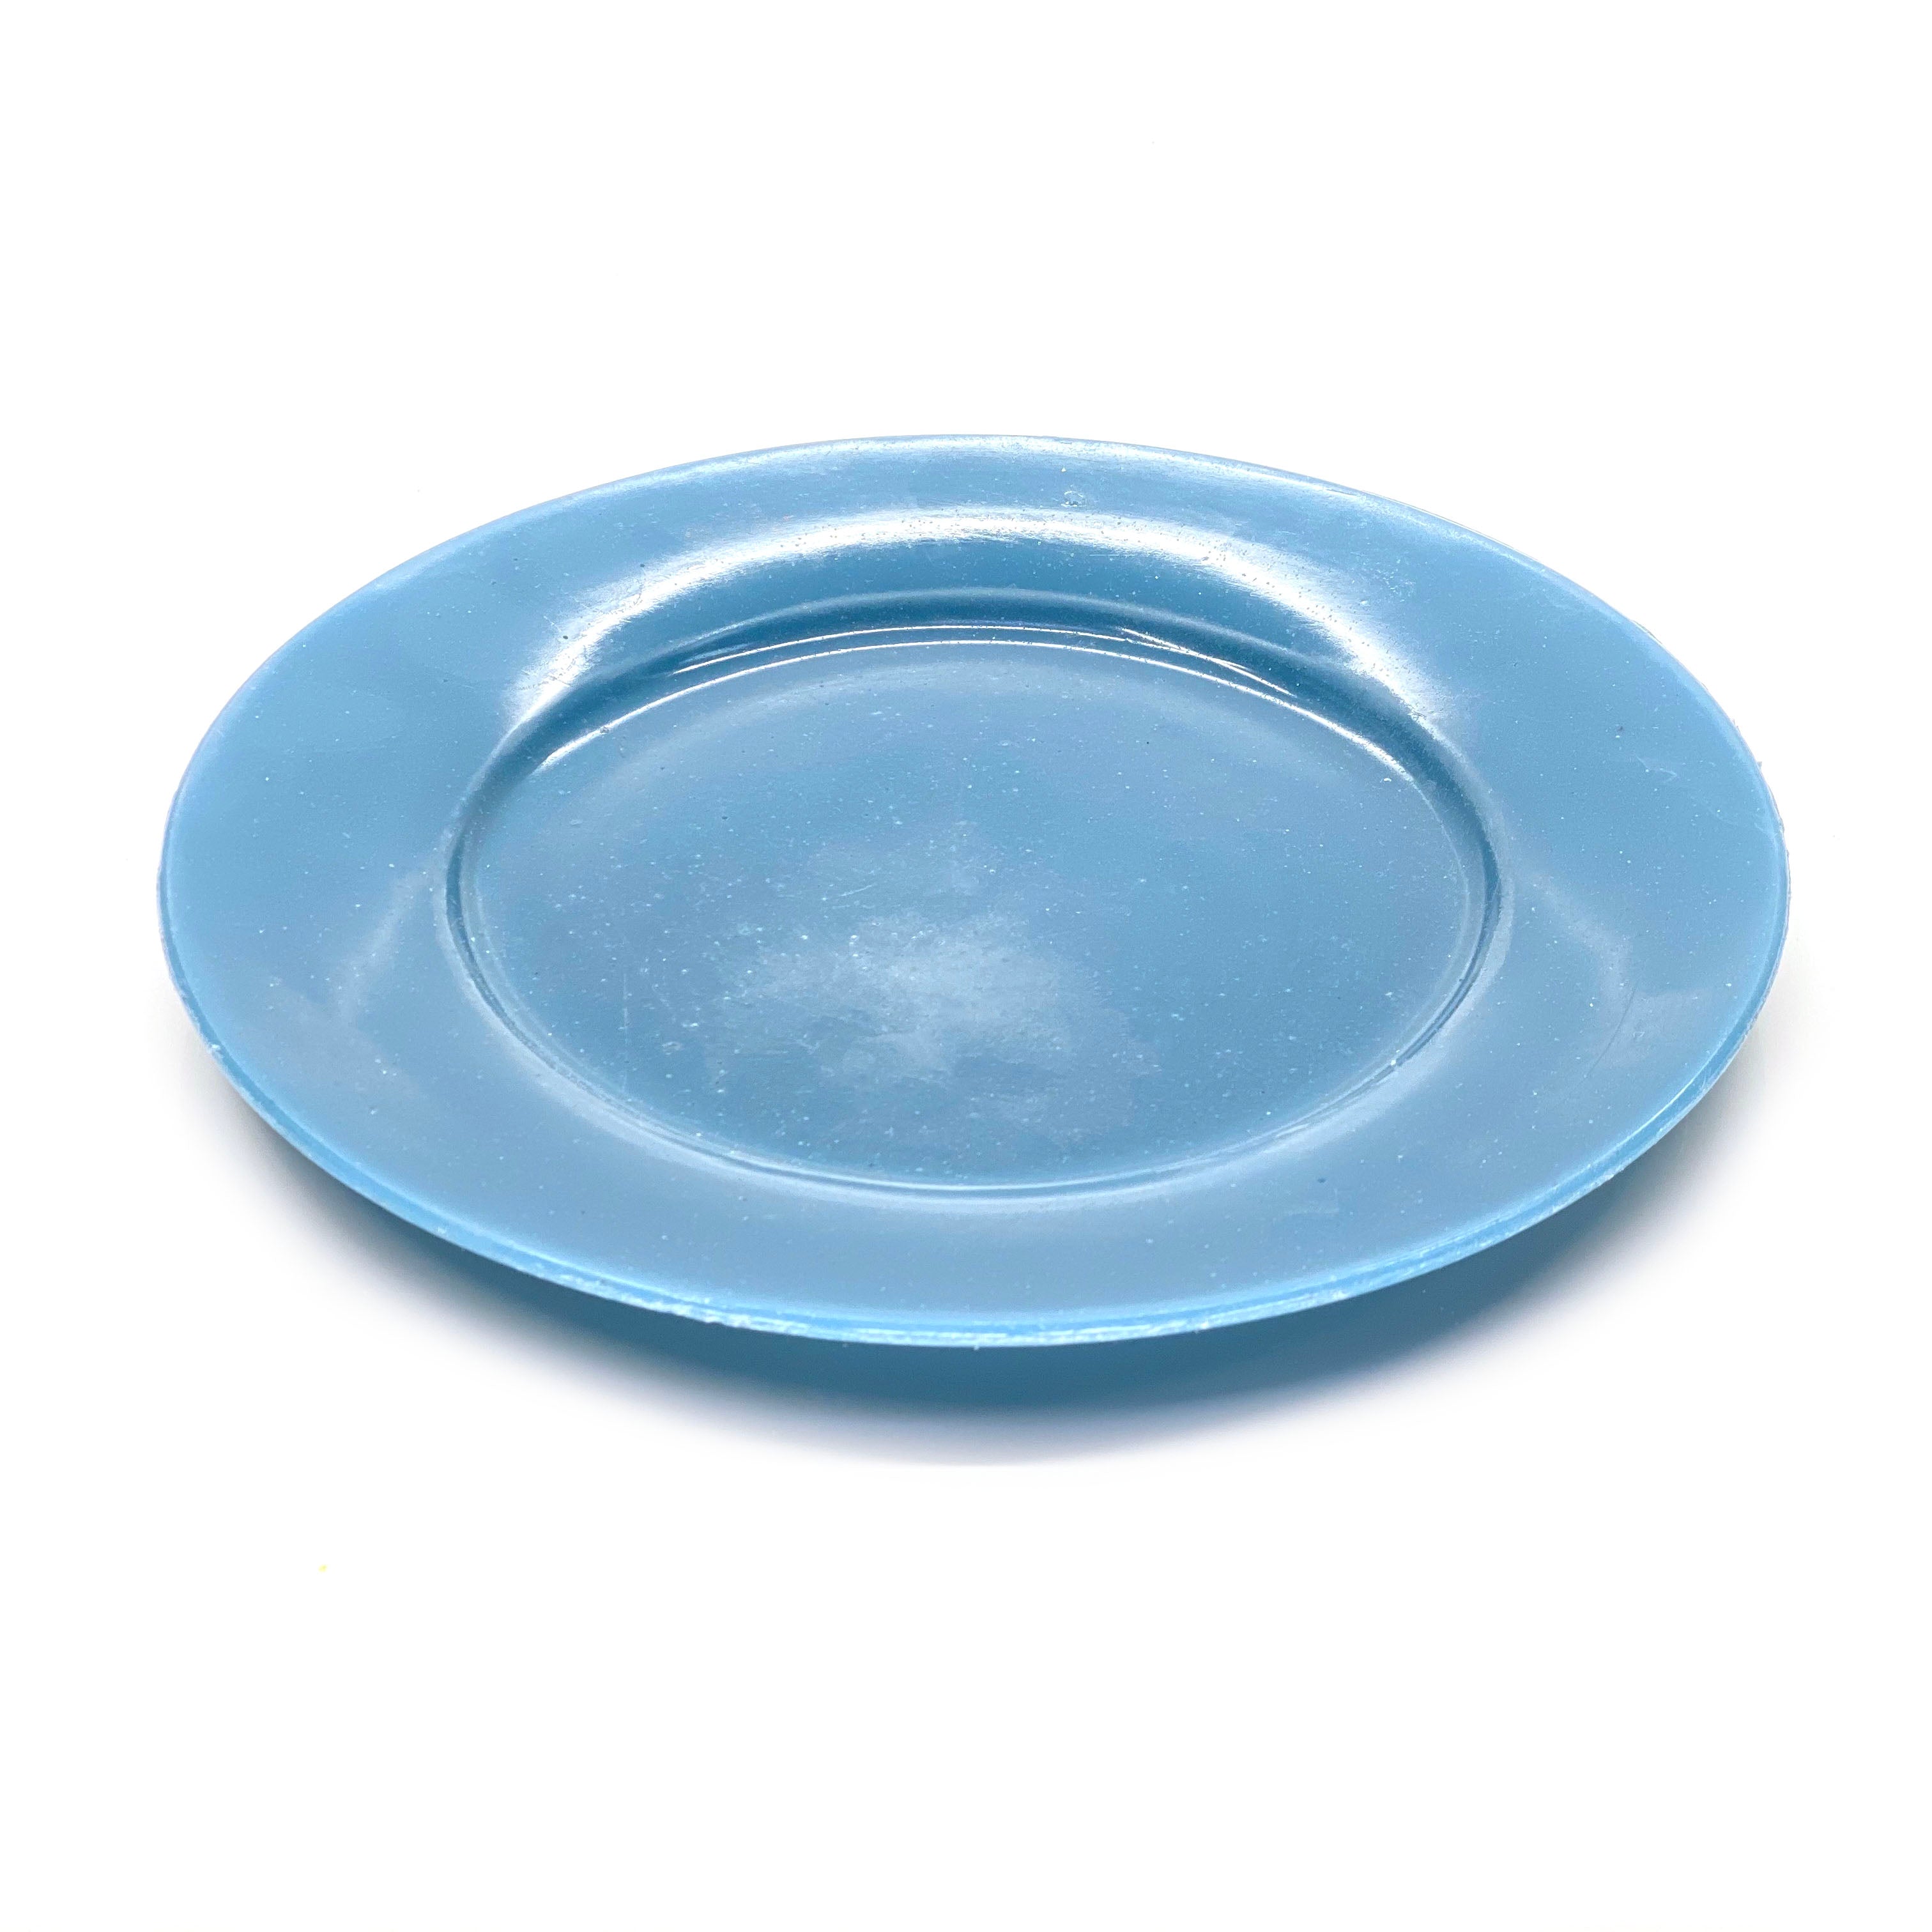 SMASHProps Breakaway Large Dinner Plate - LIGHT BLUE opaque - Light Blue,Opaque